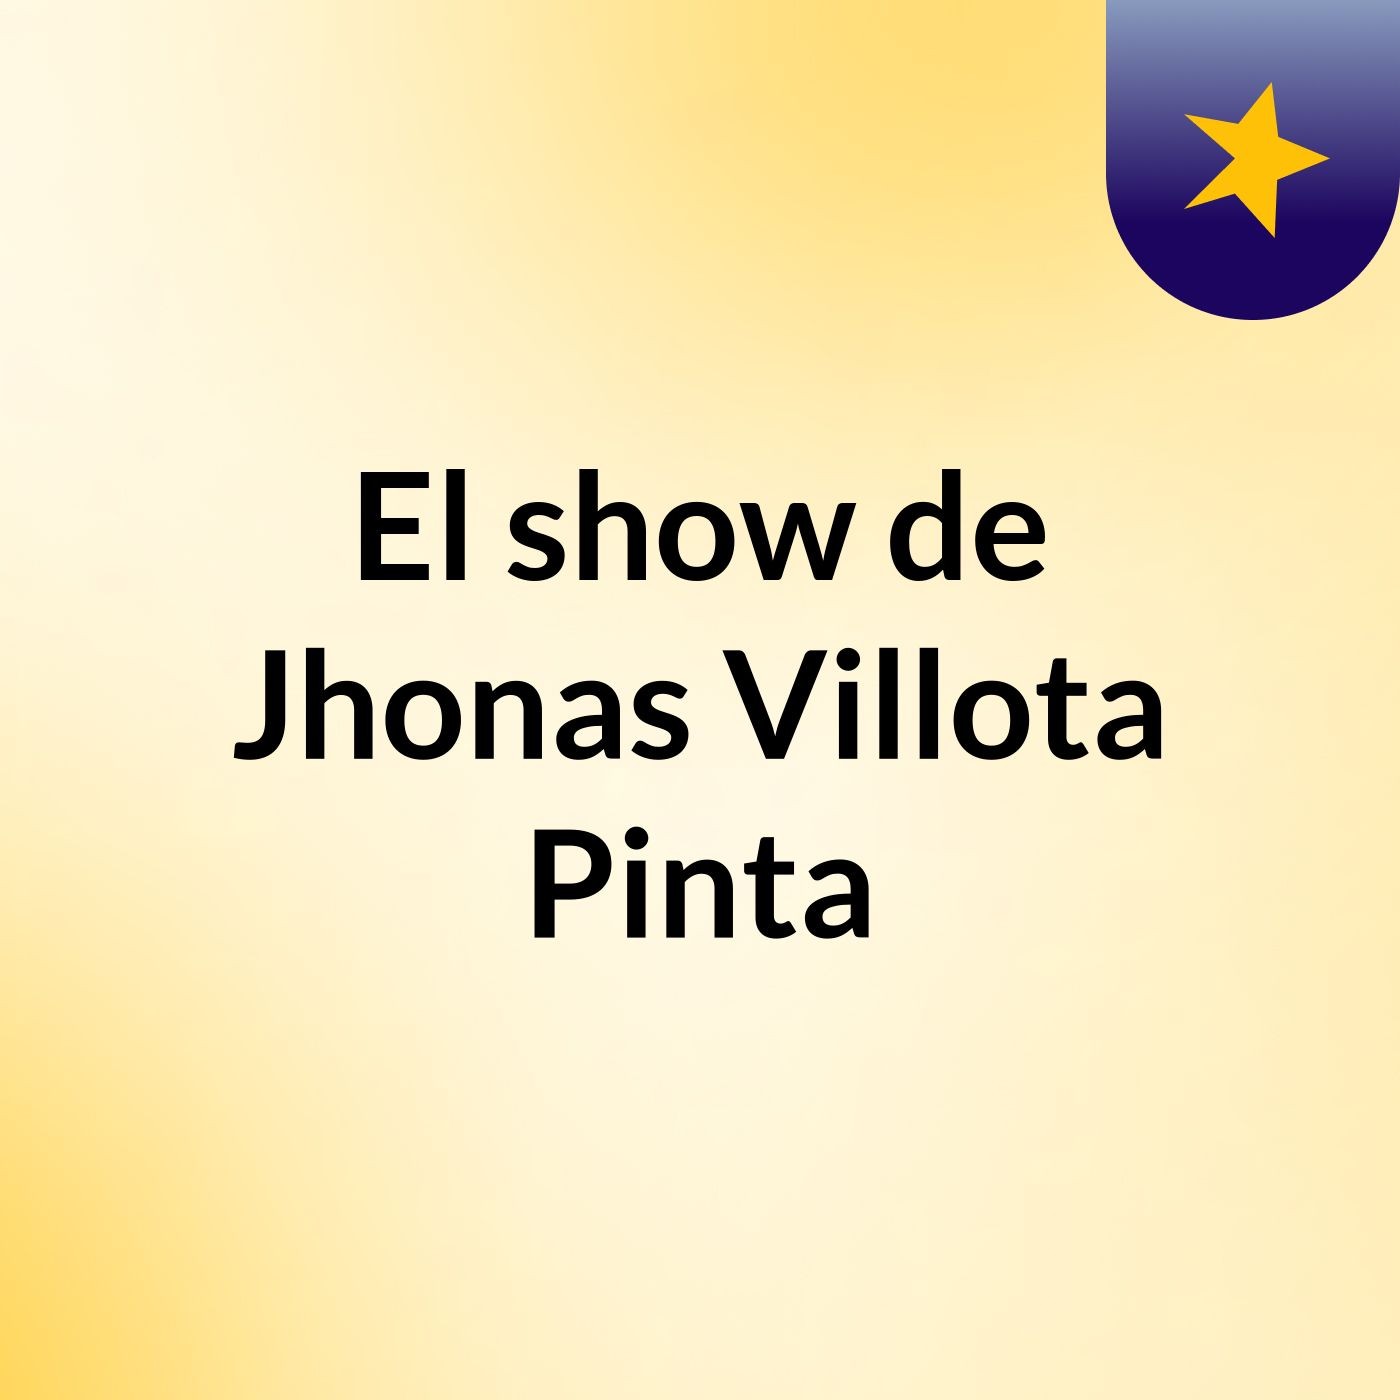 El show de Jhonas Villota Pinta